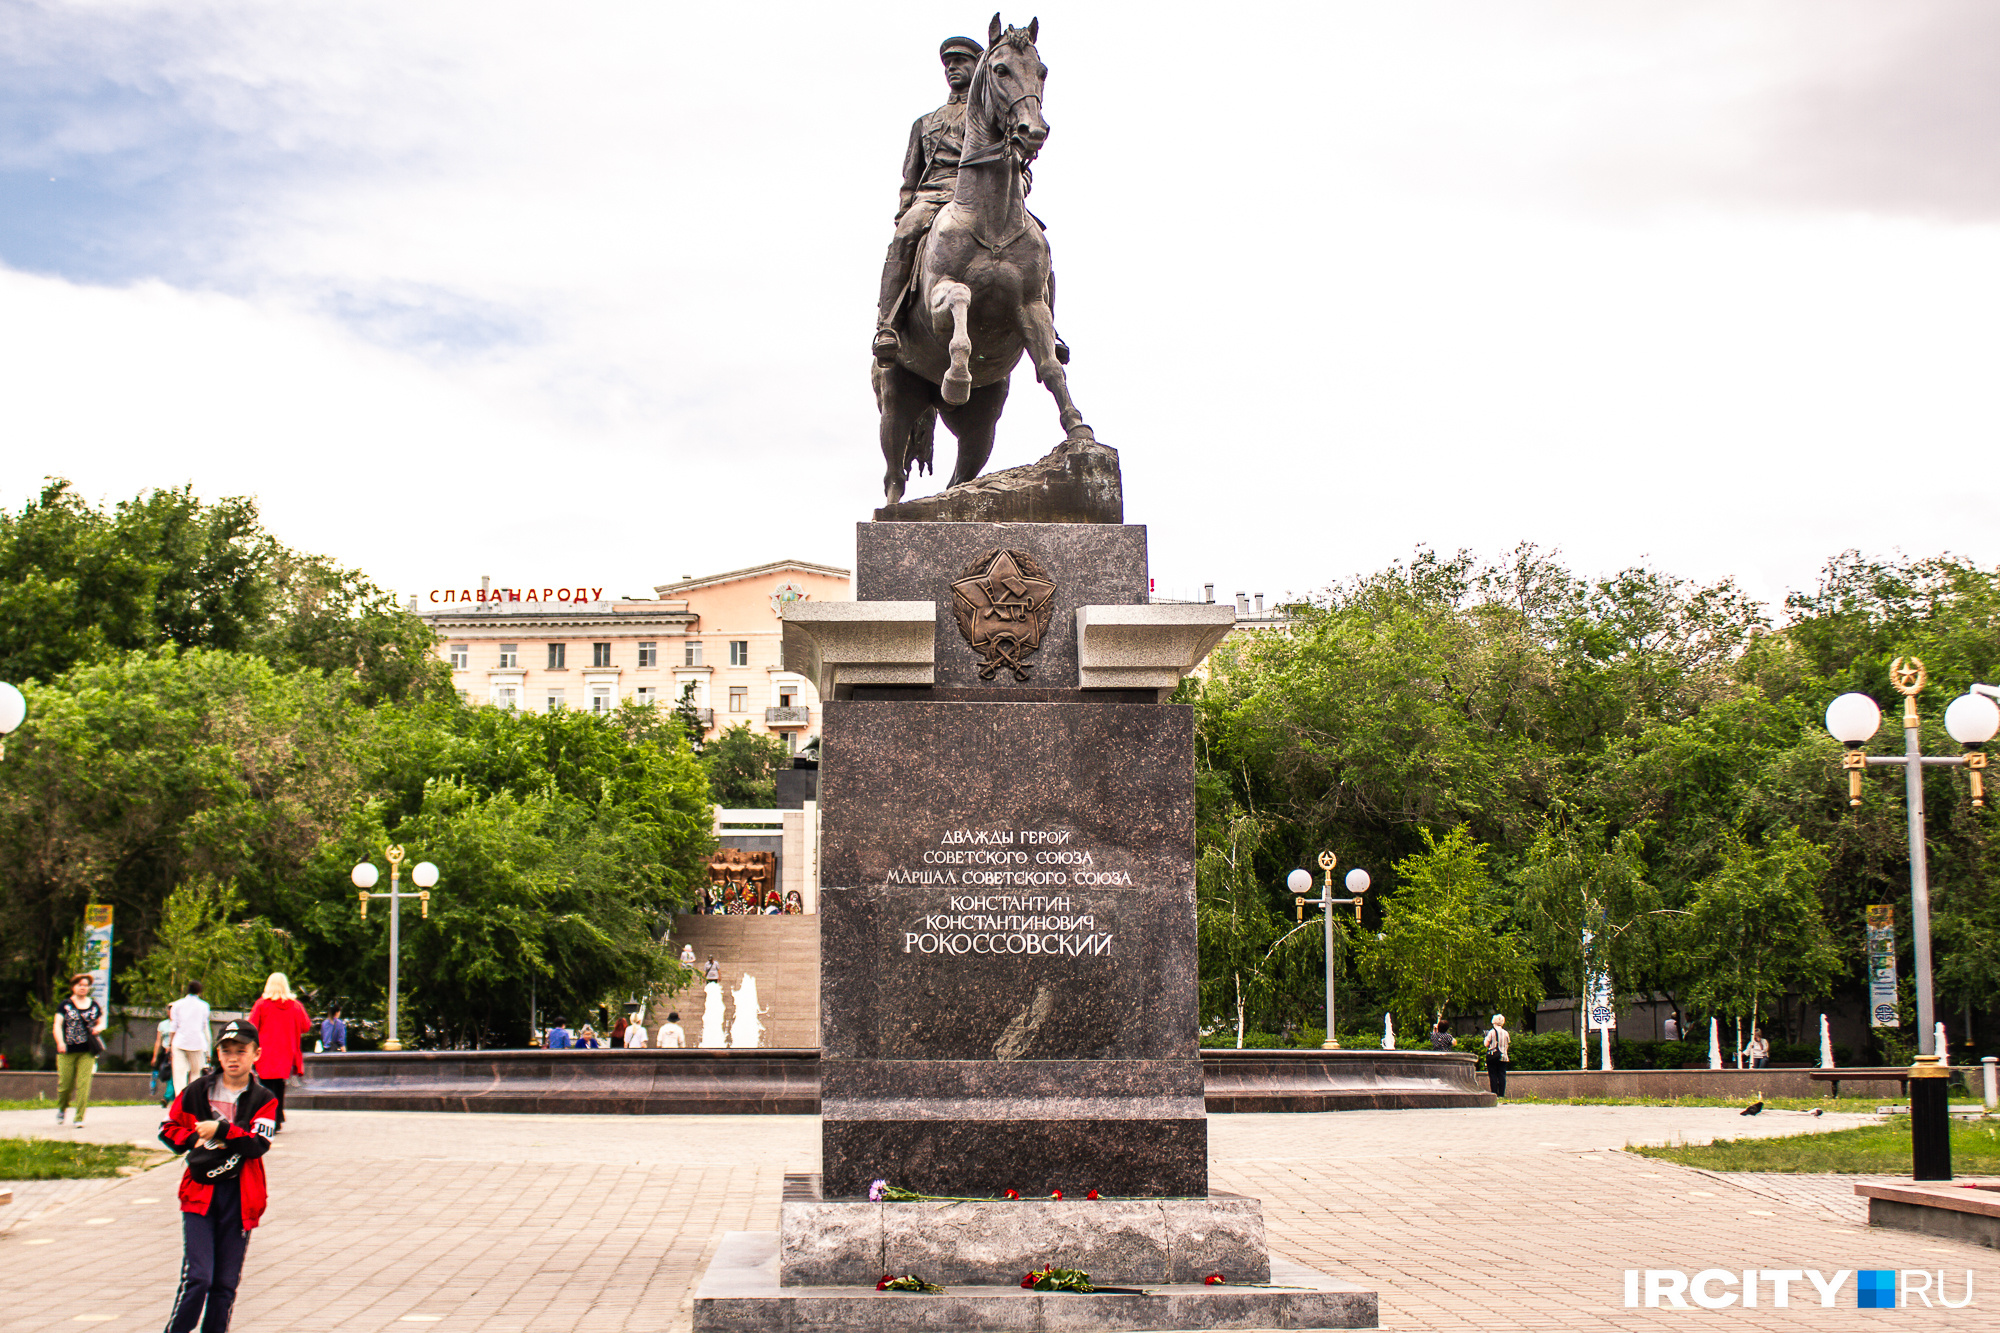 Памятник Маршалу Советского Союза Константину Рокоссовскому, который был установлен в парке мемориала Победы в 2019 году